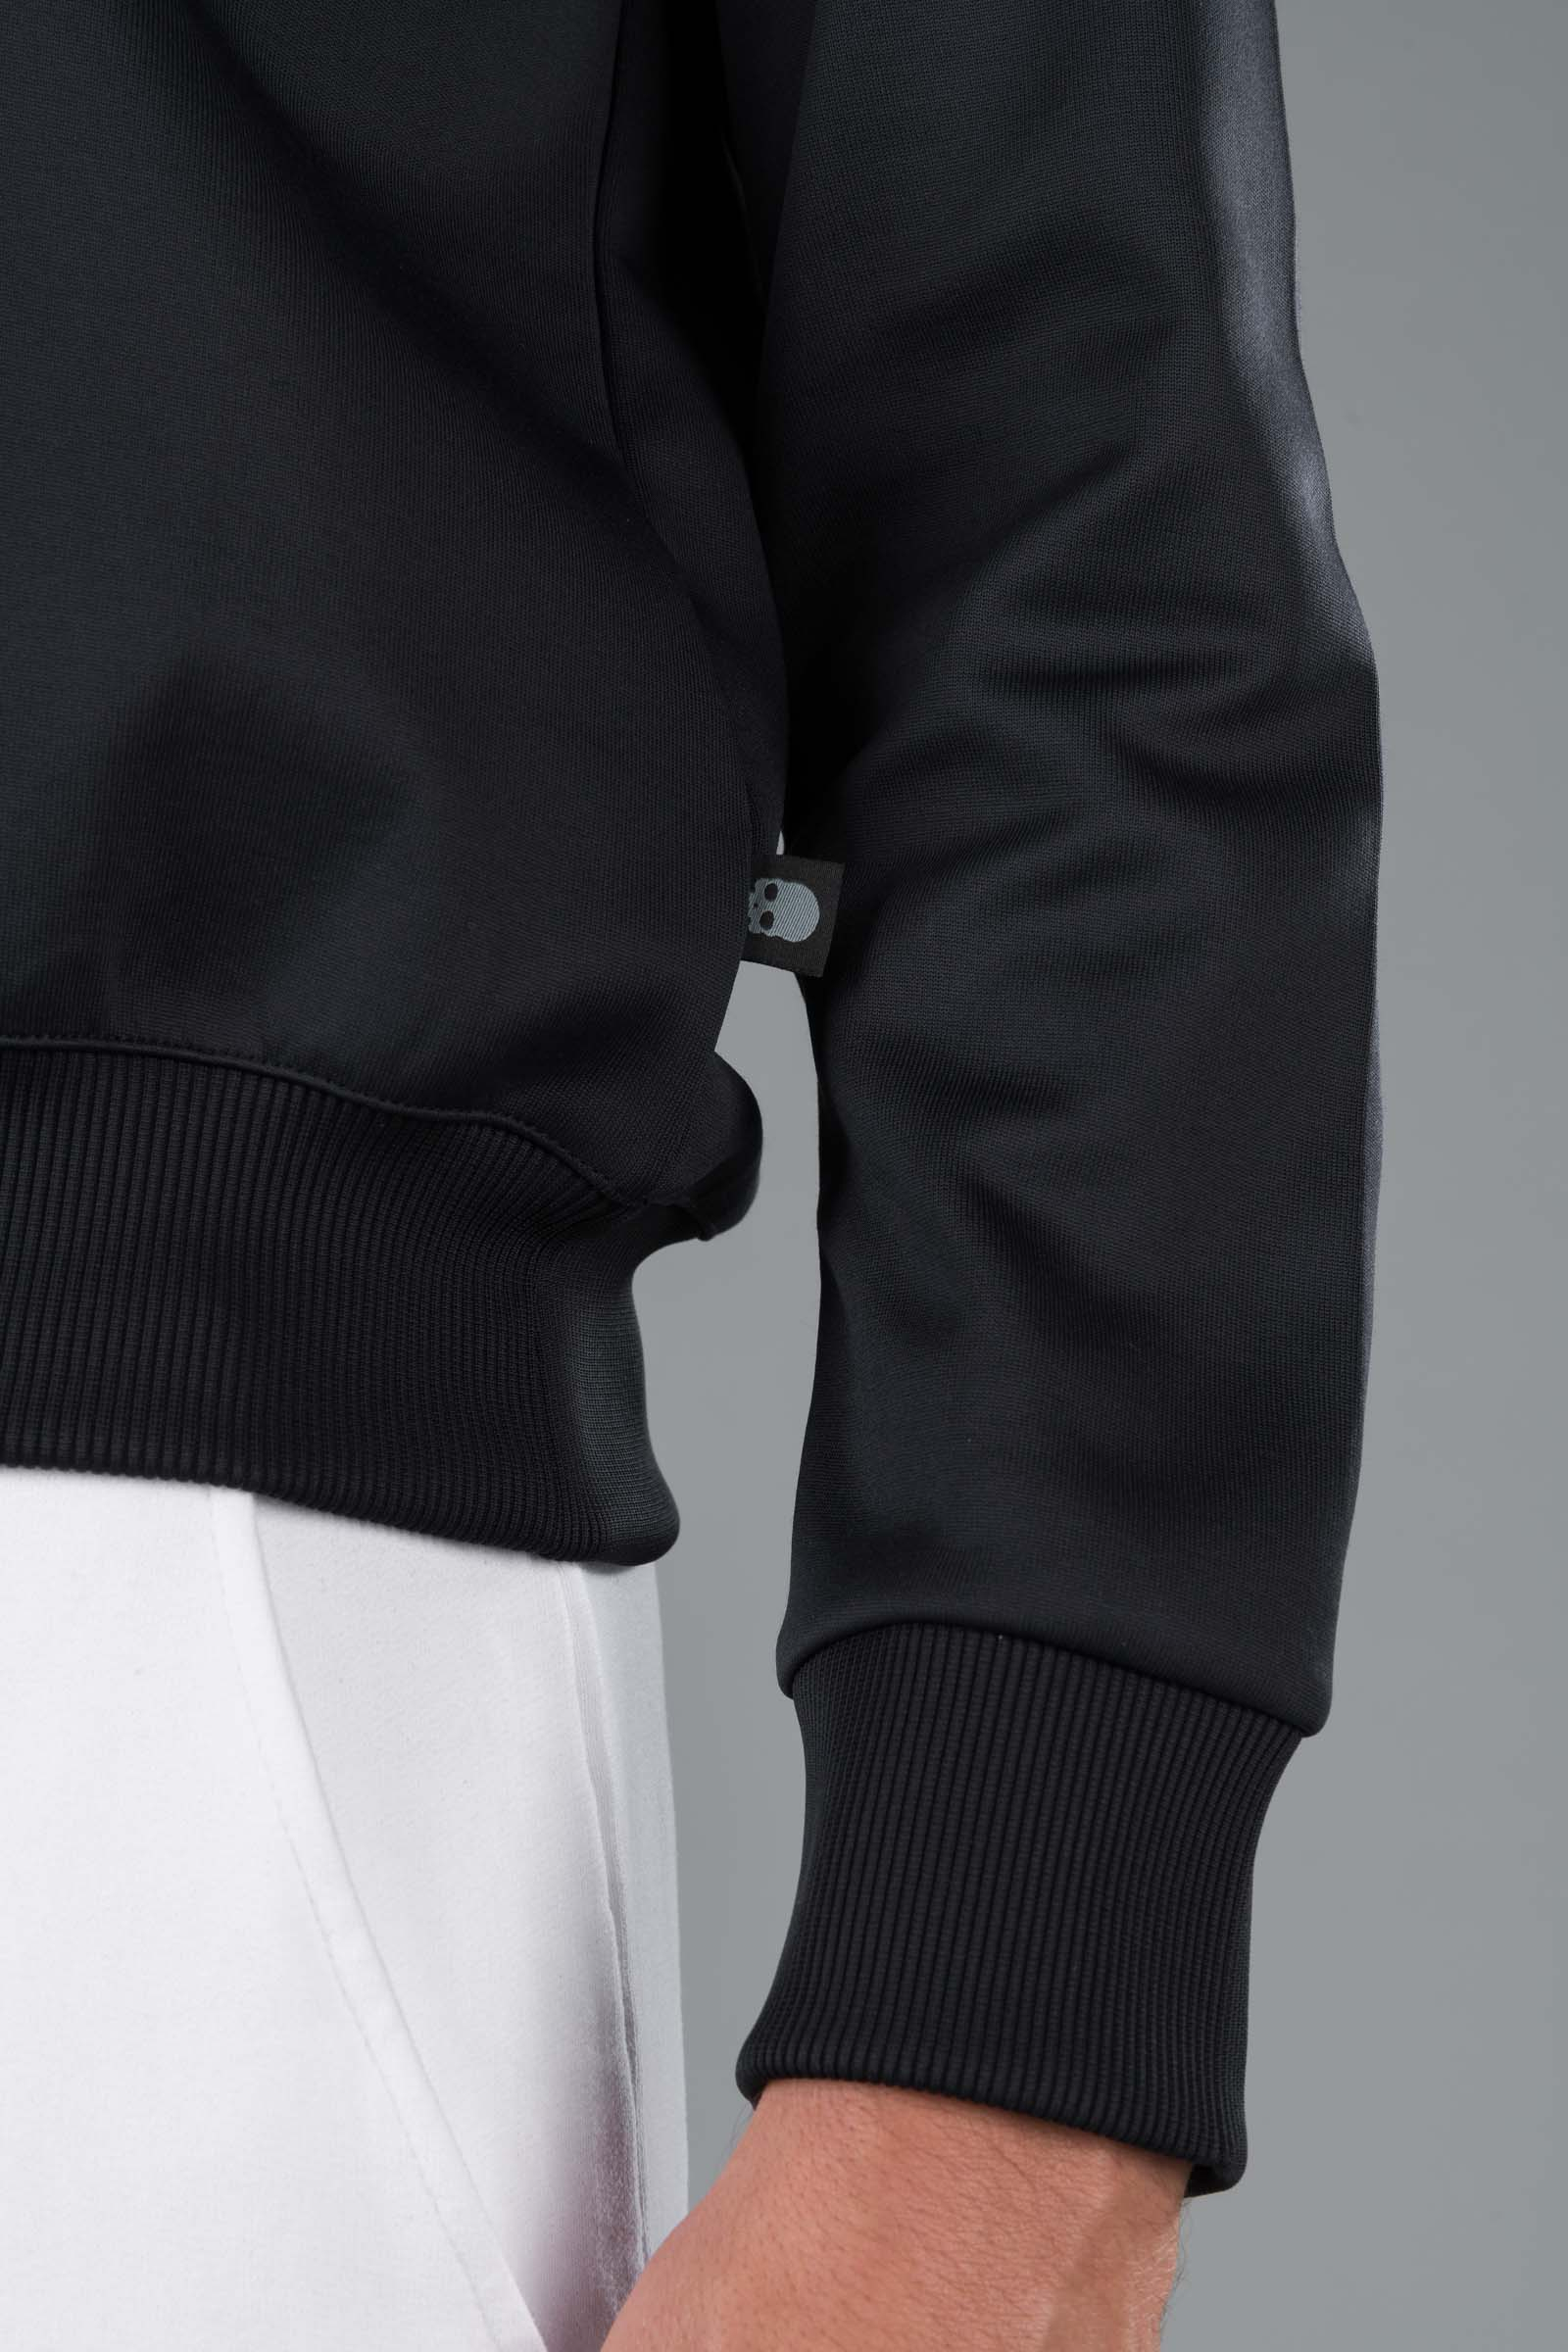 TECH CREWNECK - BLACK - Hydrogen - Luxury Sportwear